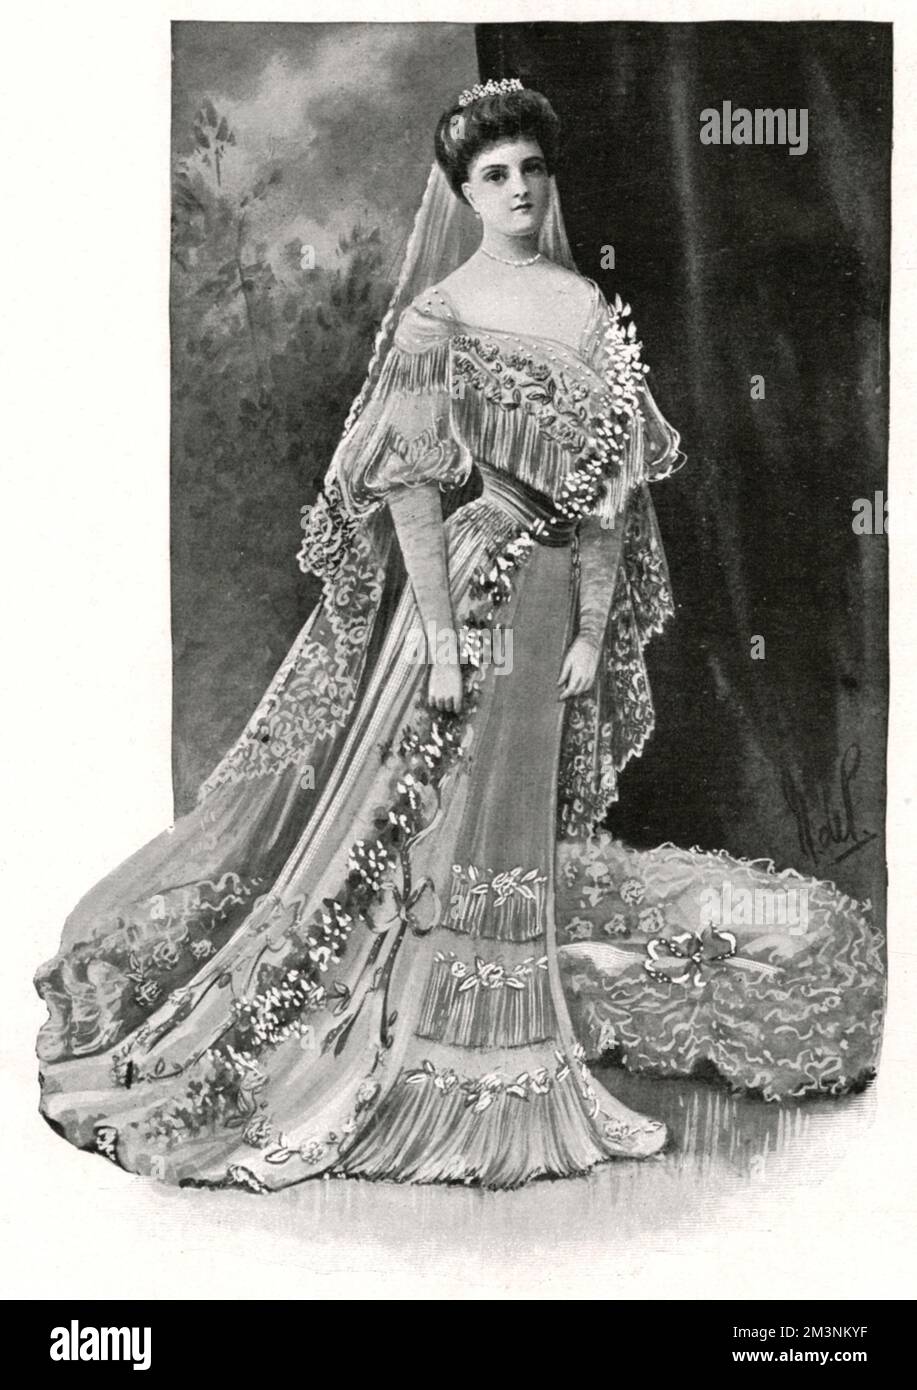 Princesa Alicia de Albany, más tarde condesa de Athlone (1883-1981), vista aquí en su vestido de boda. Se casó con el príncipe Alejandro de Teck, más tarde Alexander Cambridge, 1st conde de Athlone (1874-1957), su segundo primo una vez retirado. La boda tuvo lugar el 10 de febrero de 1904 en la Capilla de San Jorge, Windsor. Después de su matrimonio fue conocida como la Princesa Alejandro de Teck. Fecha: 1904 de febrero Foto de stock